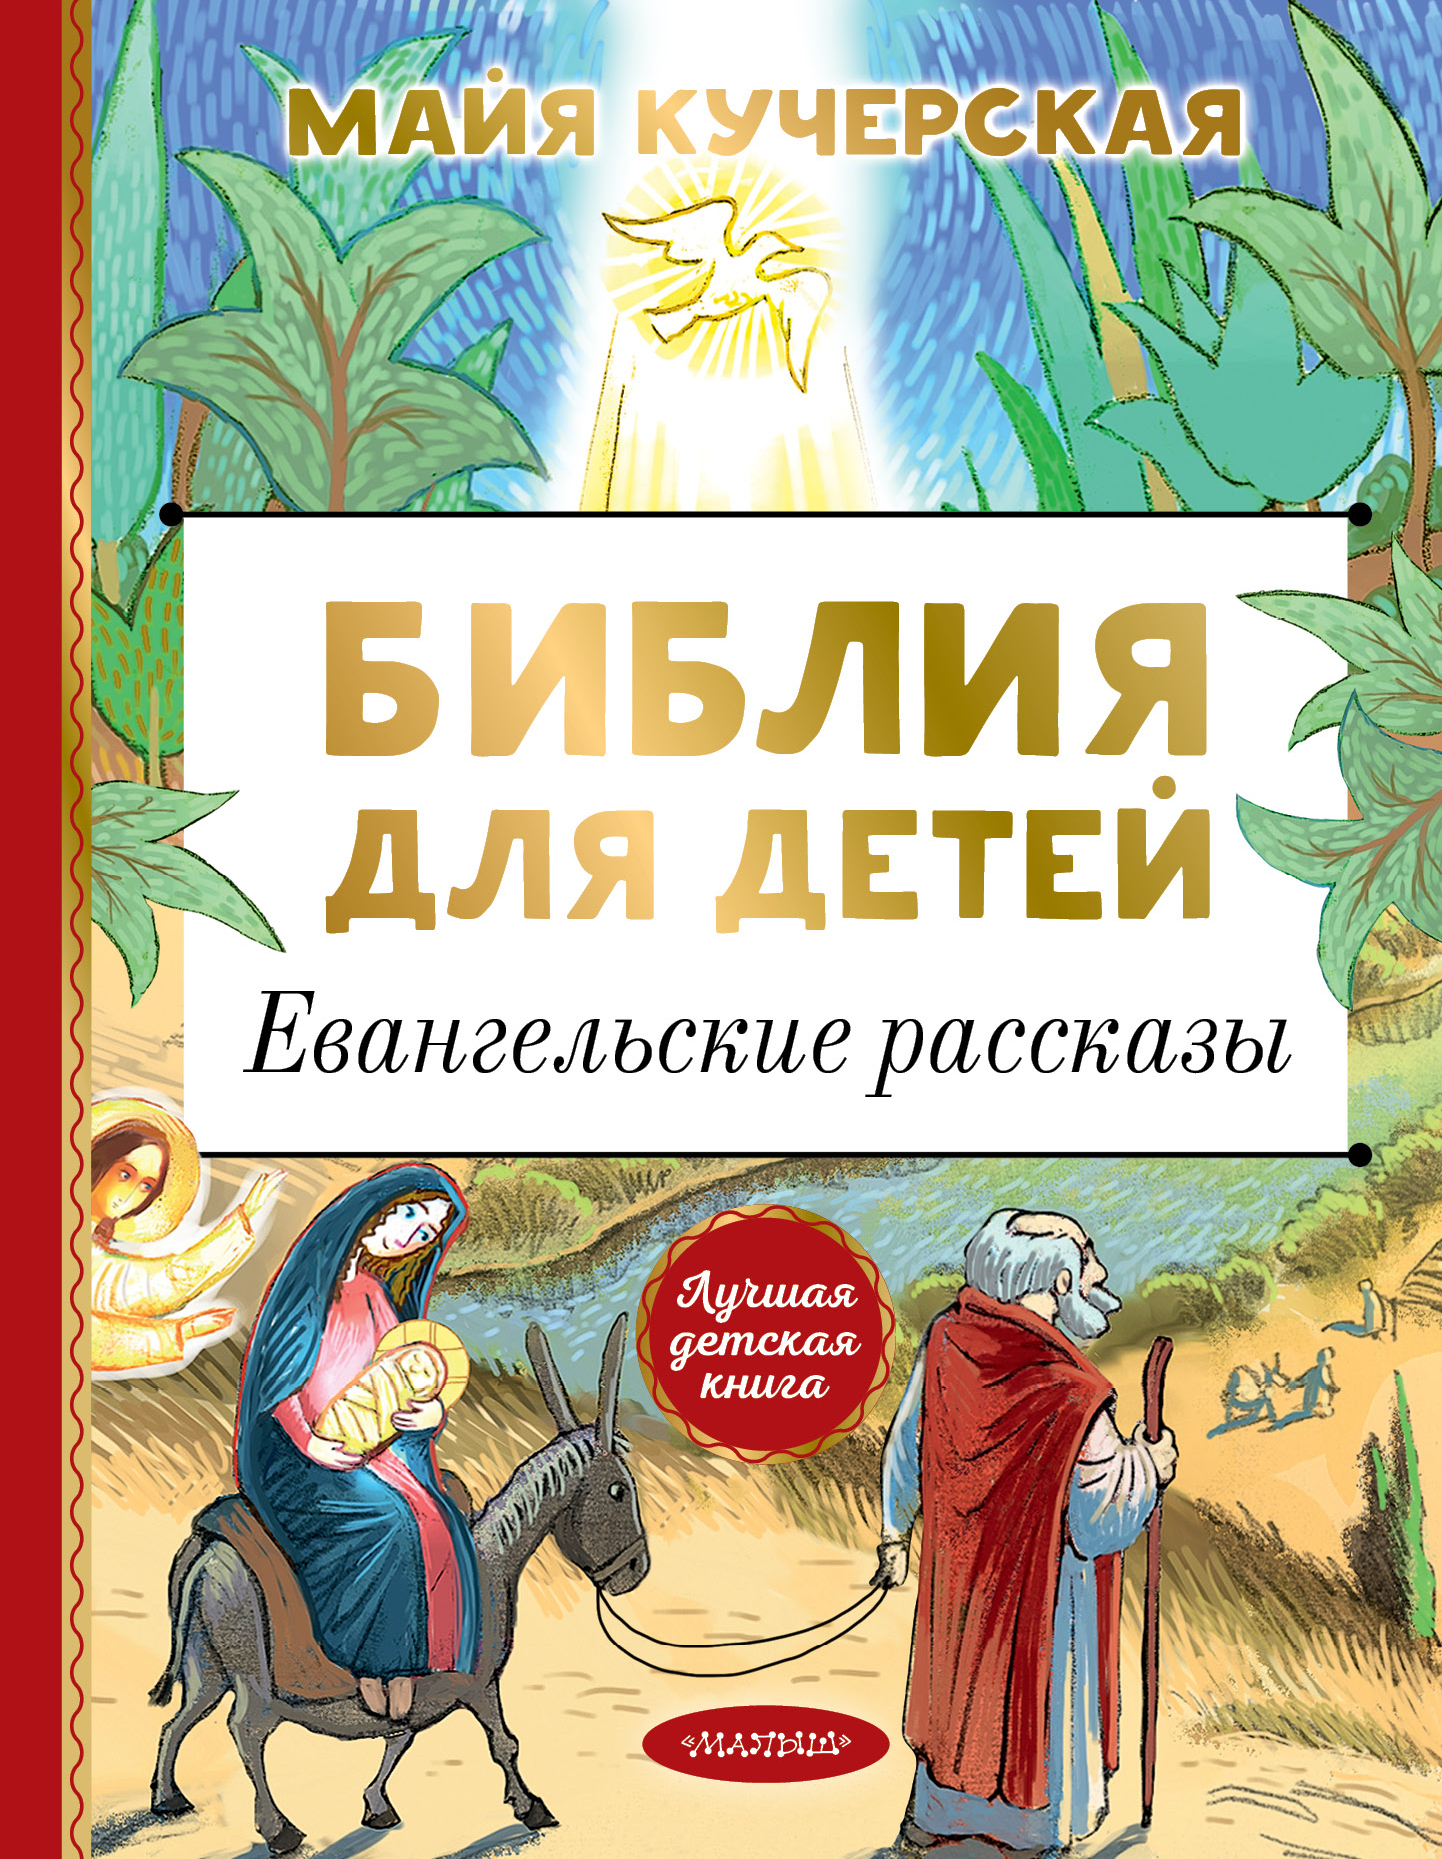 Кучерская М.А. Библия для детей. Евангельские рассказы 